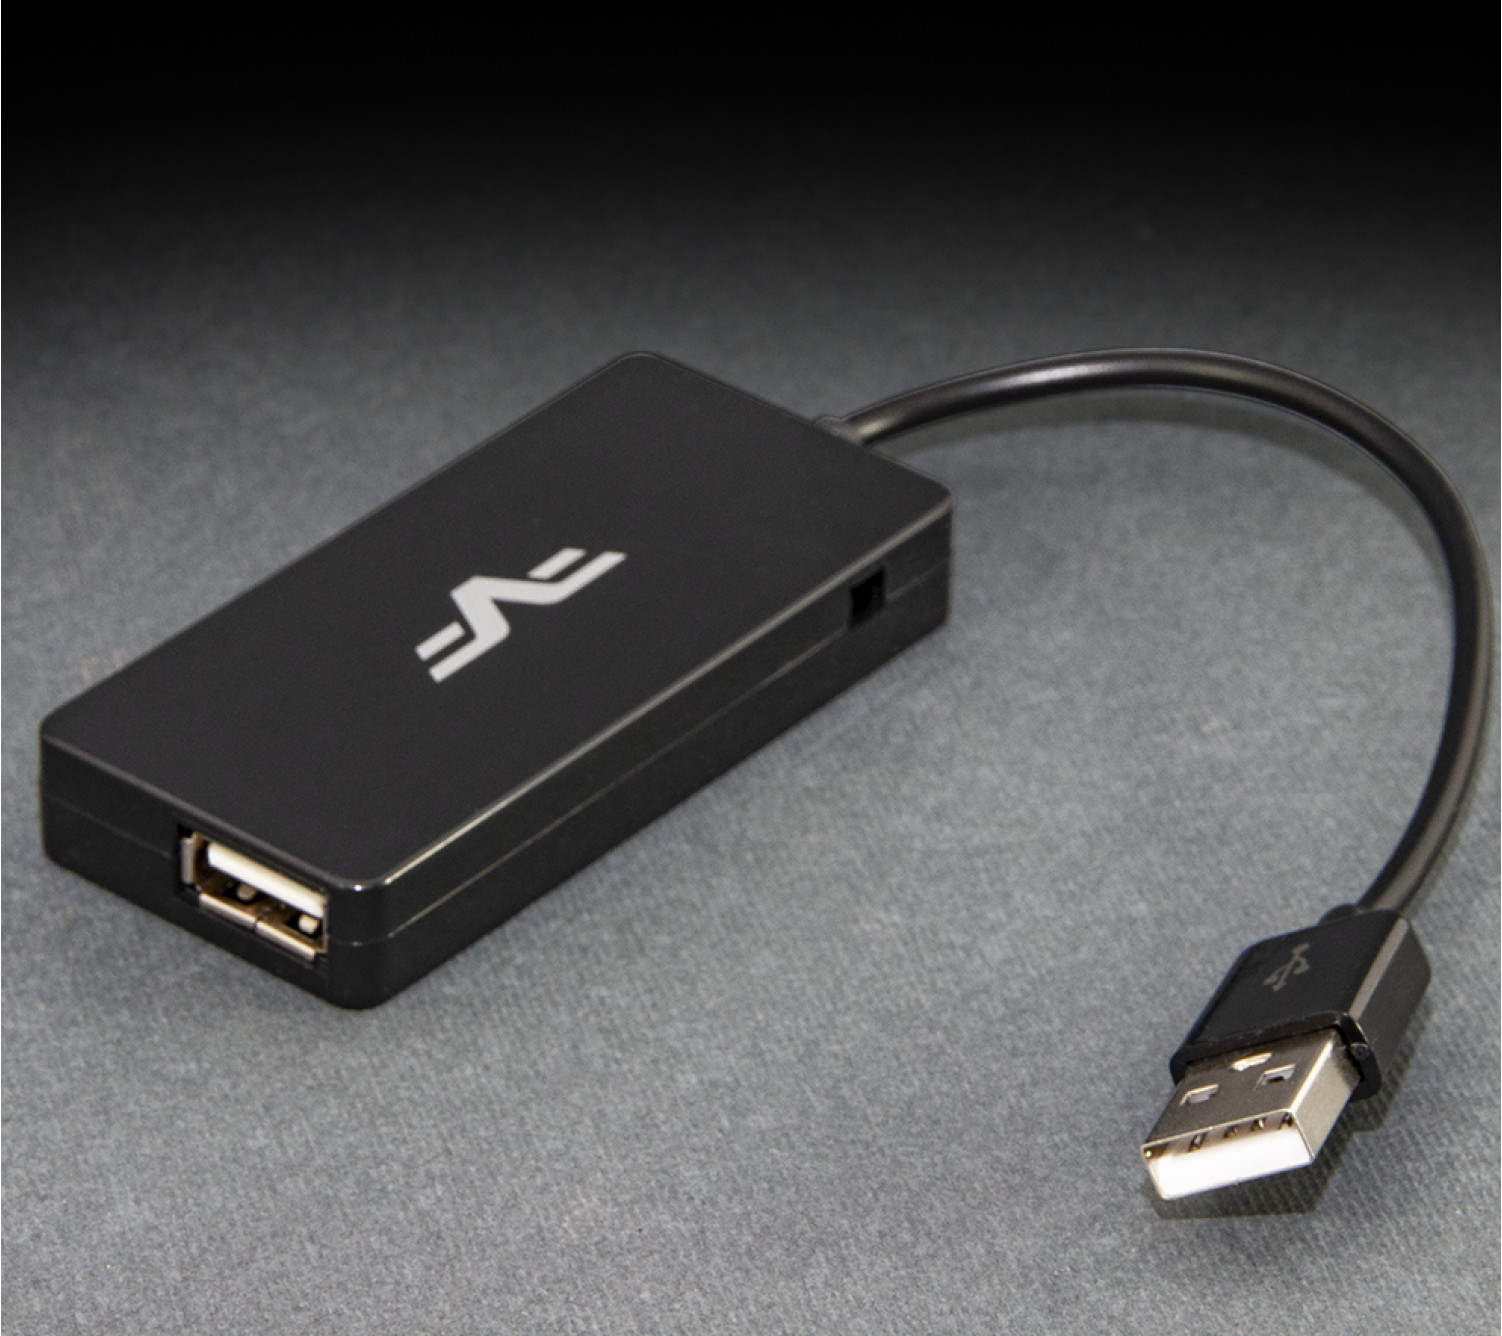 USB-хаб Frime 4-х портовый 2.0 Black (FH-20030)